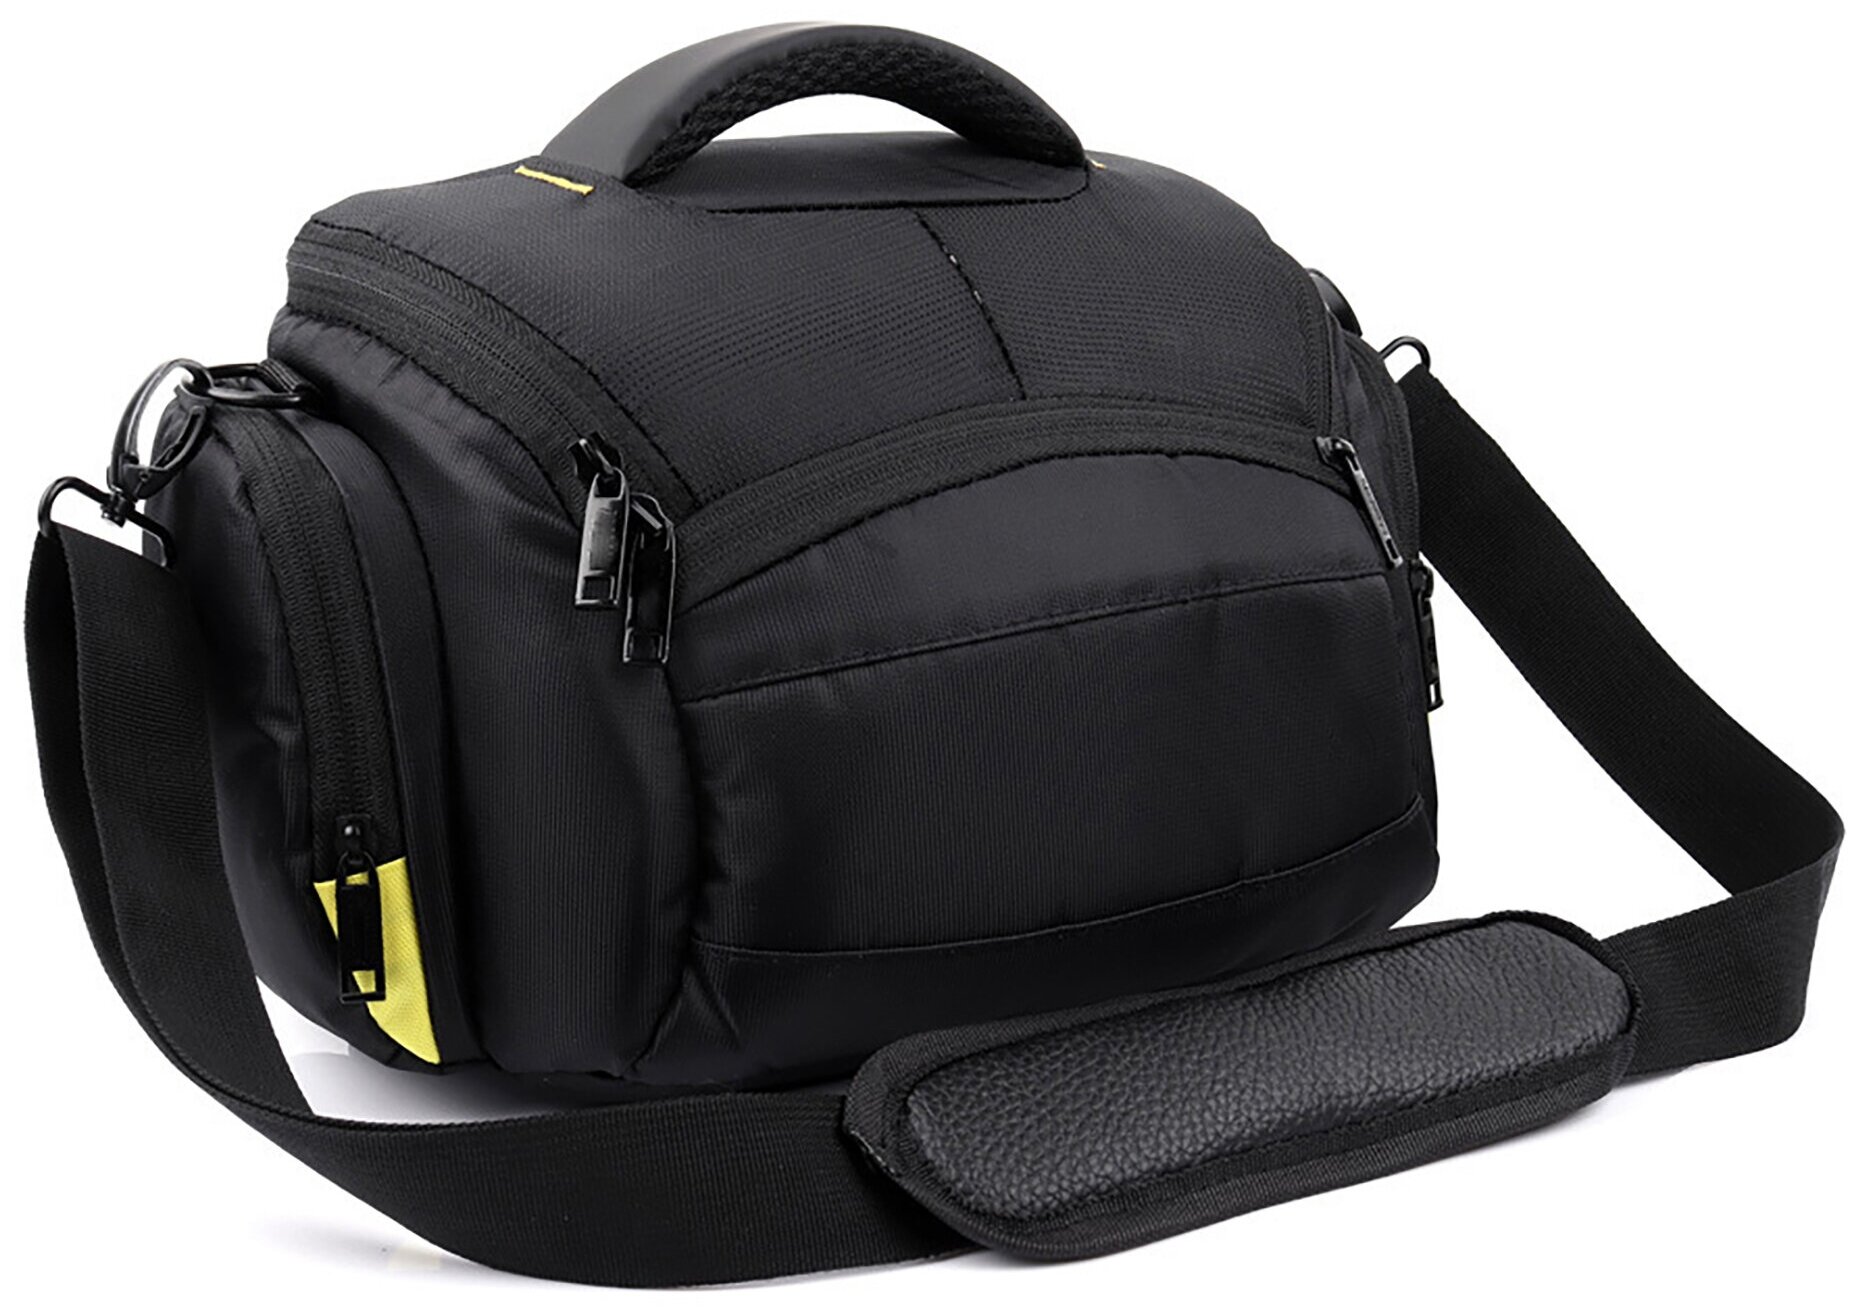 Чехол-сумка MyPads TC-1233 для фотоаппарата Nikon D610/ D7000/ D7100/ D7200/ D750 из качественной износостойкой влагозащитной ткани черный